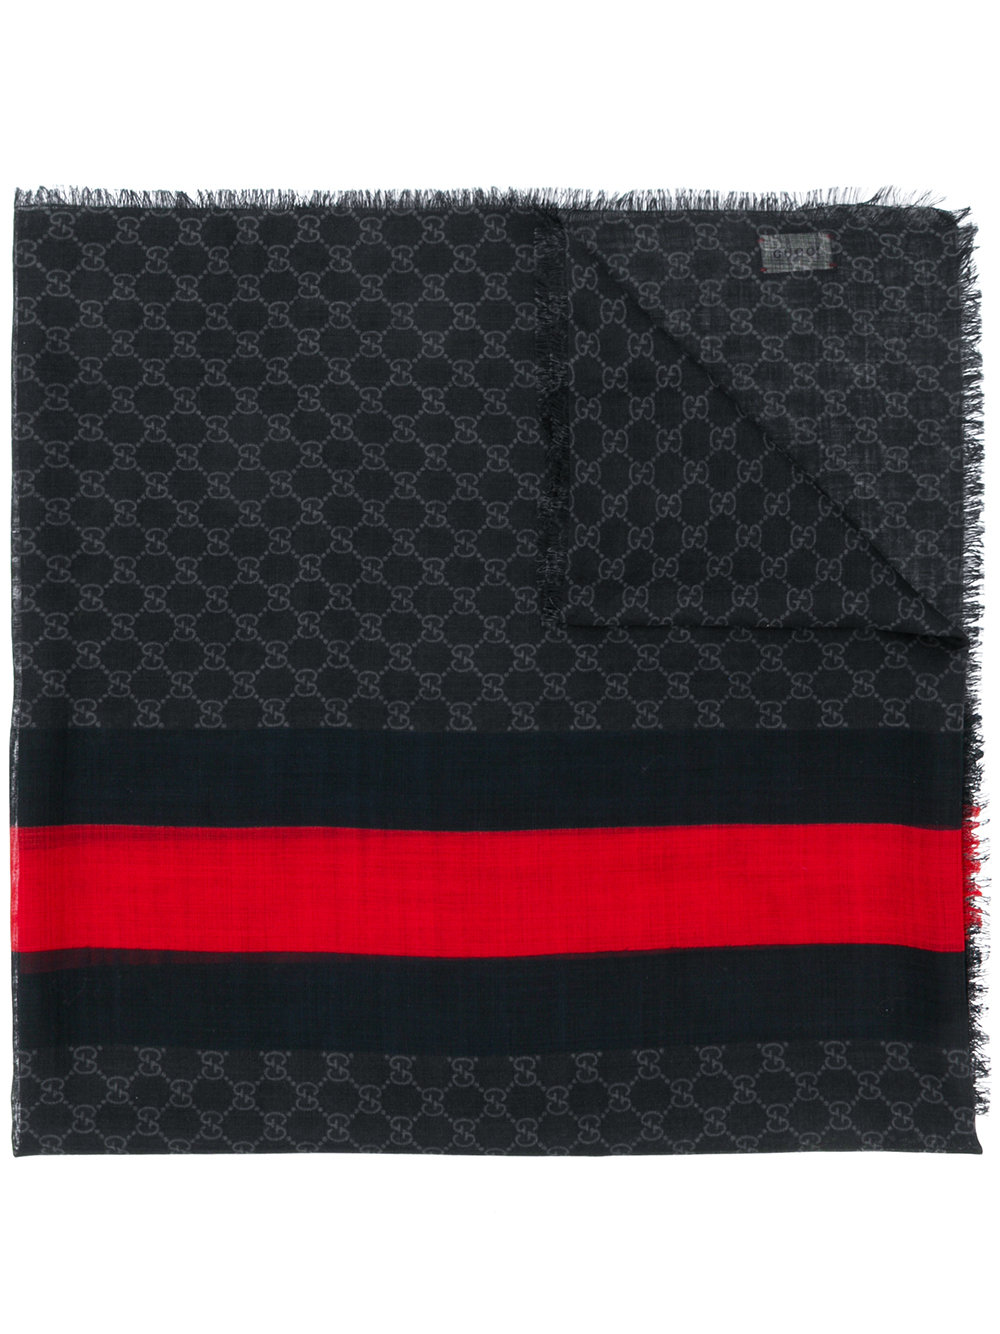 GUCCI sciarpa in garza lana 70x200 nera con banda Gucci Web rossa centrale